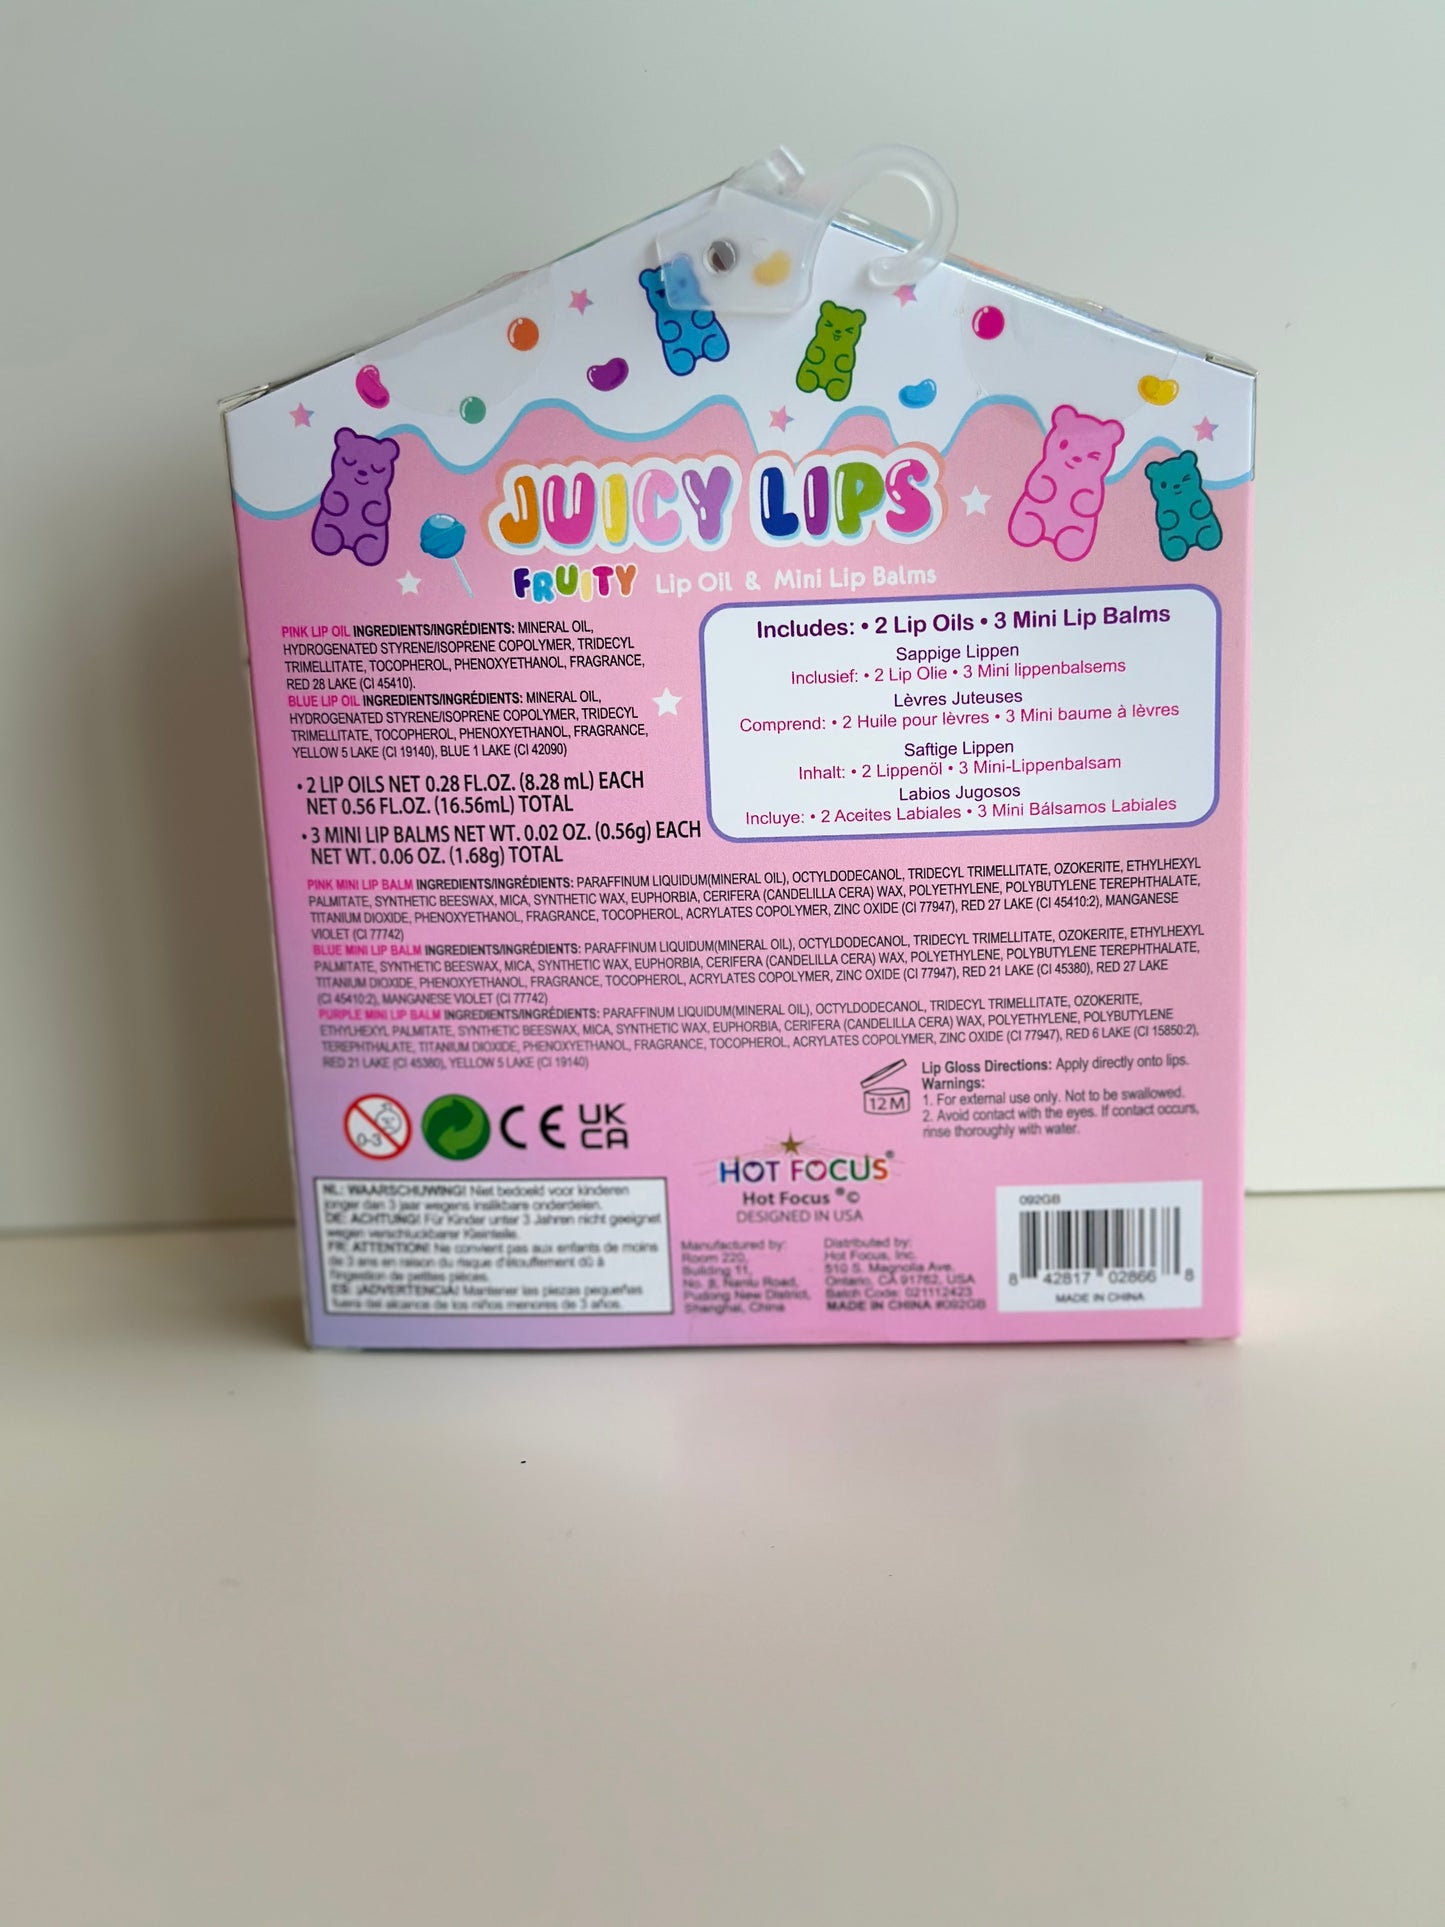 Juicy Lips Fruity Gummy Bear